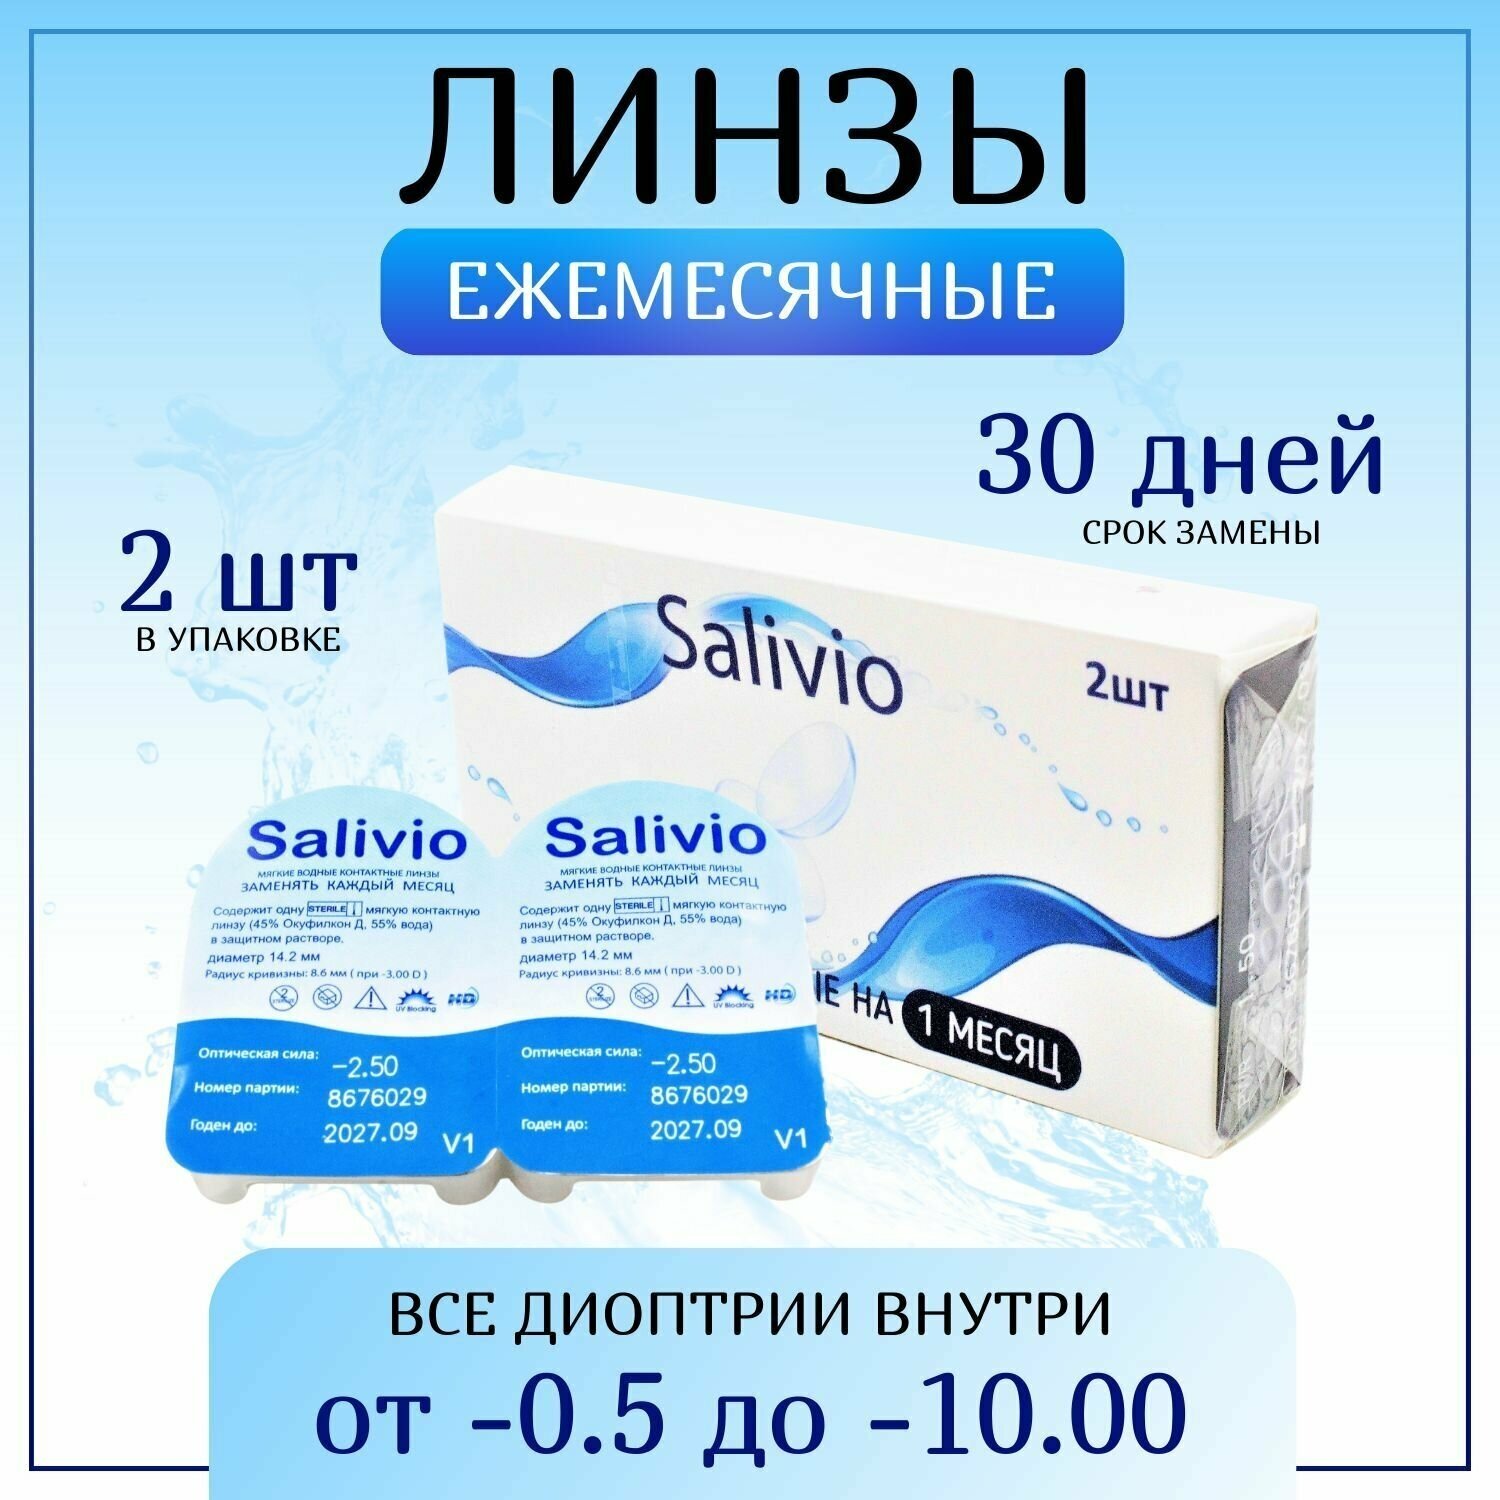 Контактные линзы, SALIVIO, -2,25 ежемесячные (30 дней), 2 штуки, прозрачные